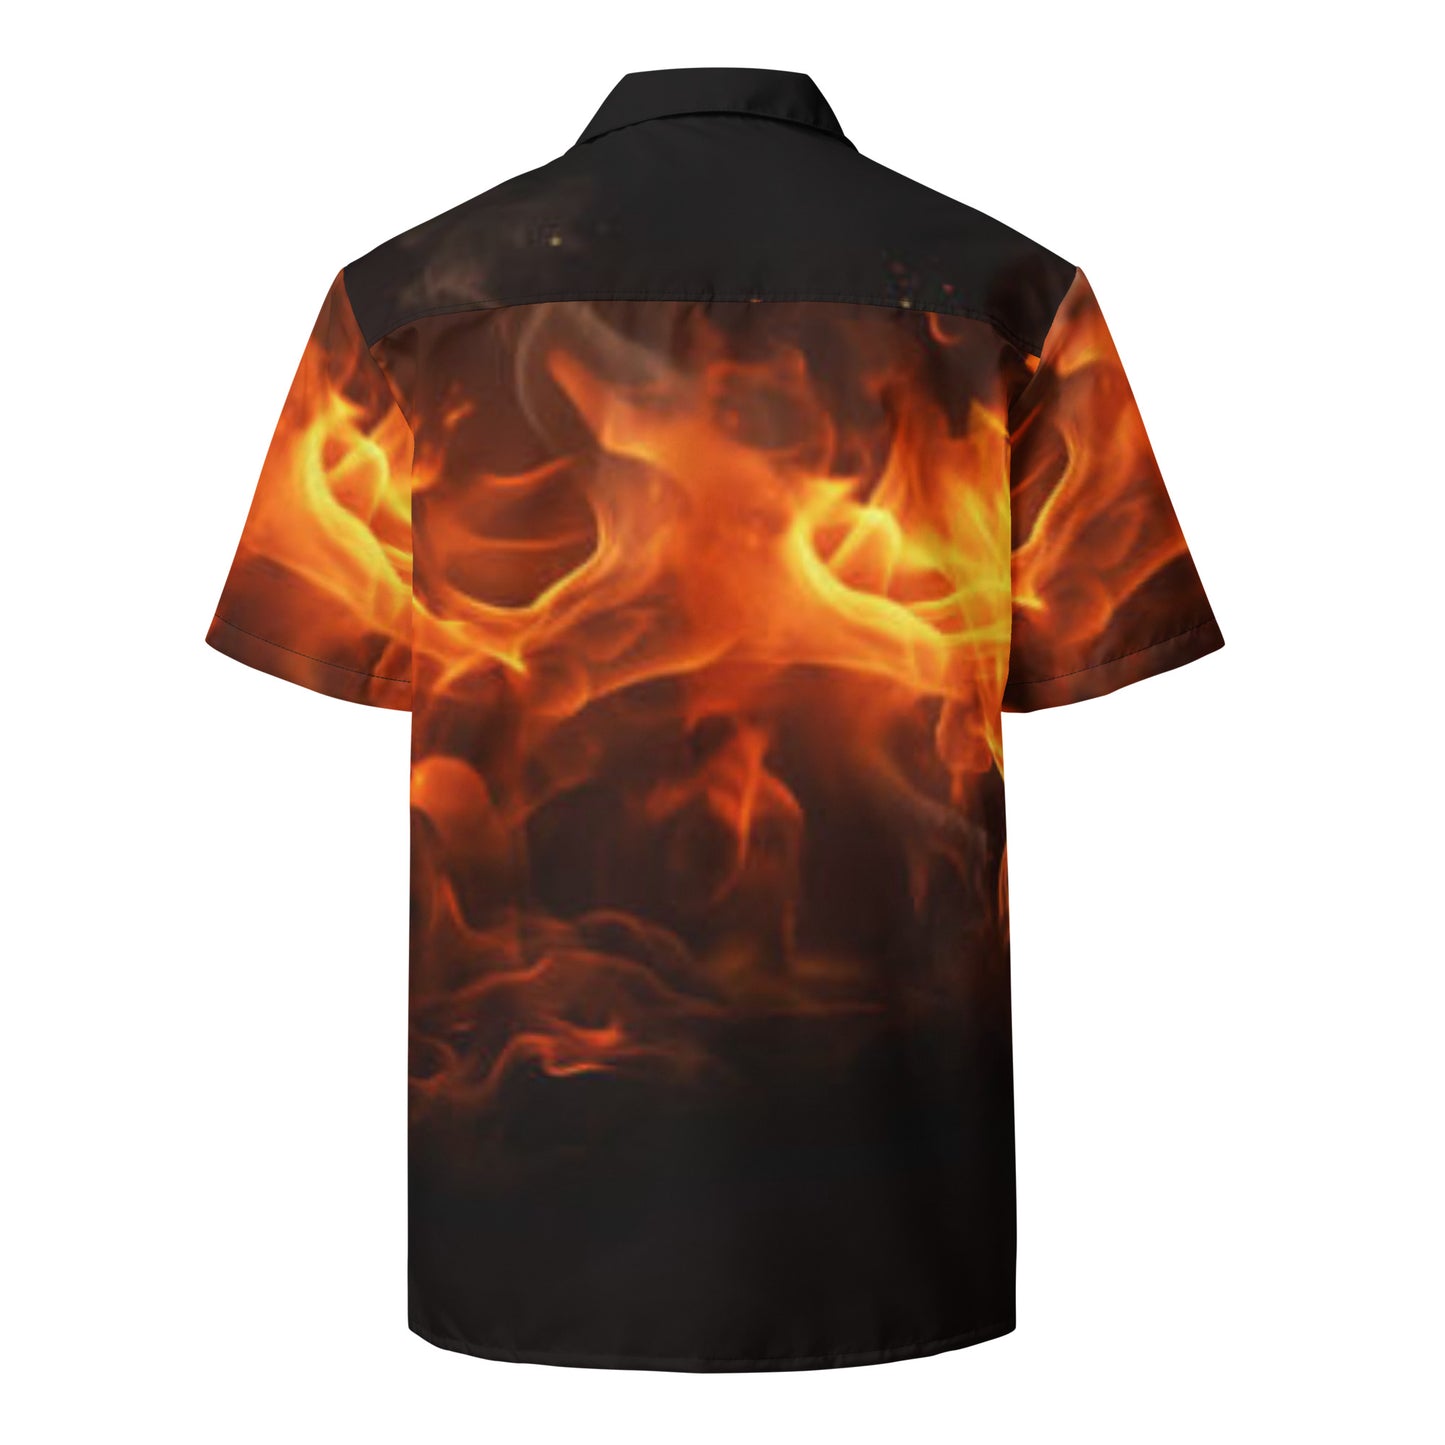 Unisex Peaceful Fire button shirt